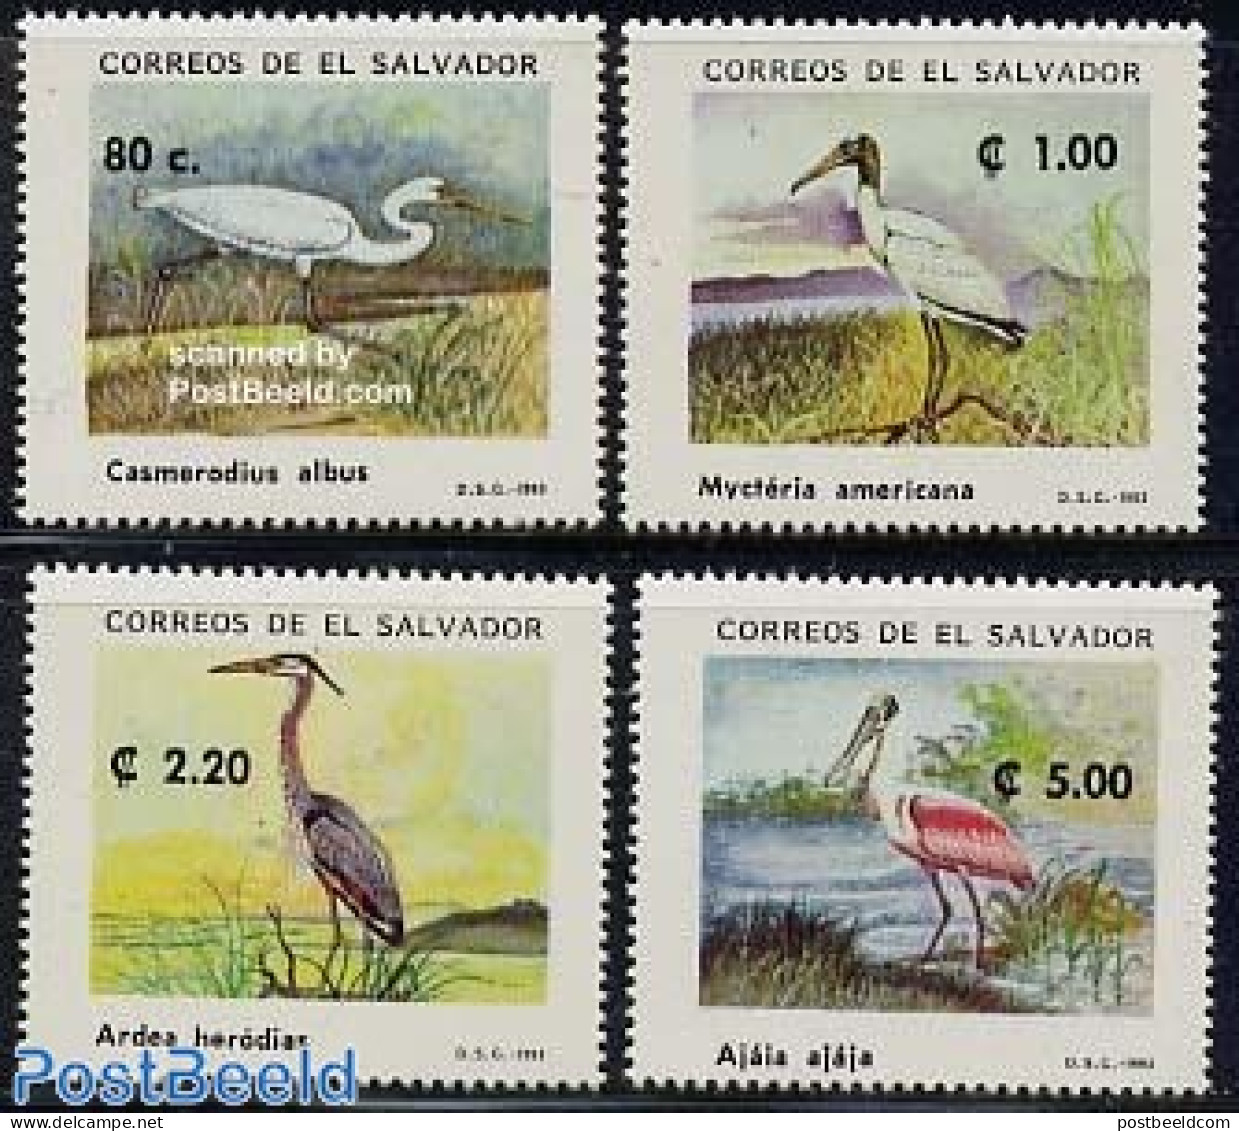 El Salvador 1993 Waterbirds 4v, Mint NH, Nature - Birds - Salvador